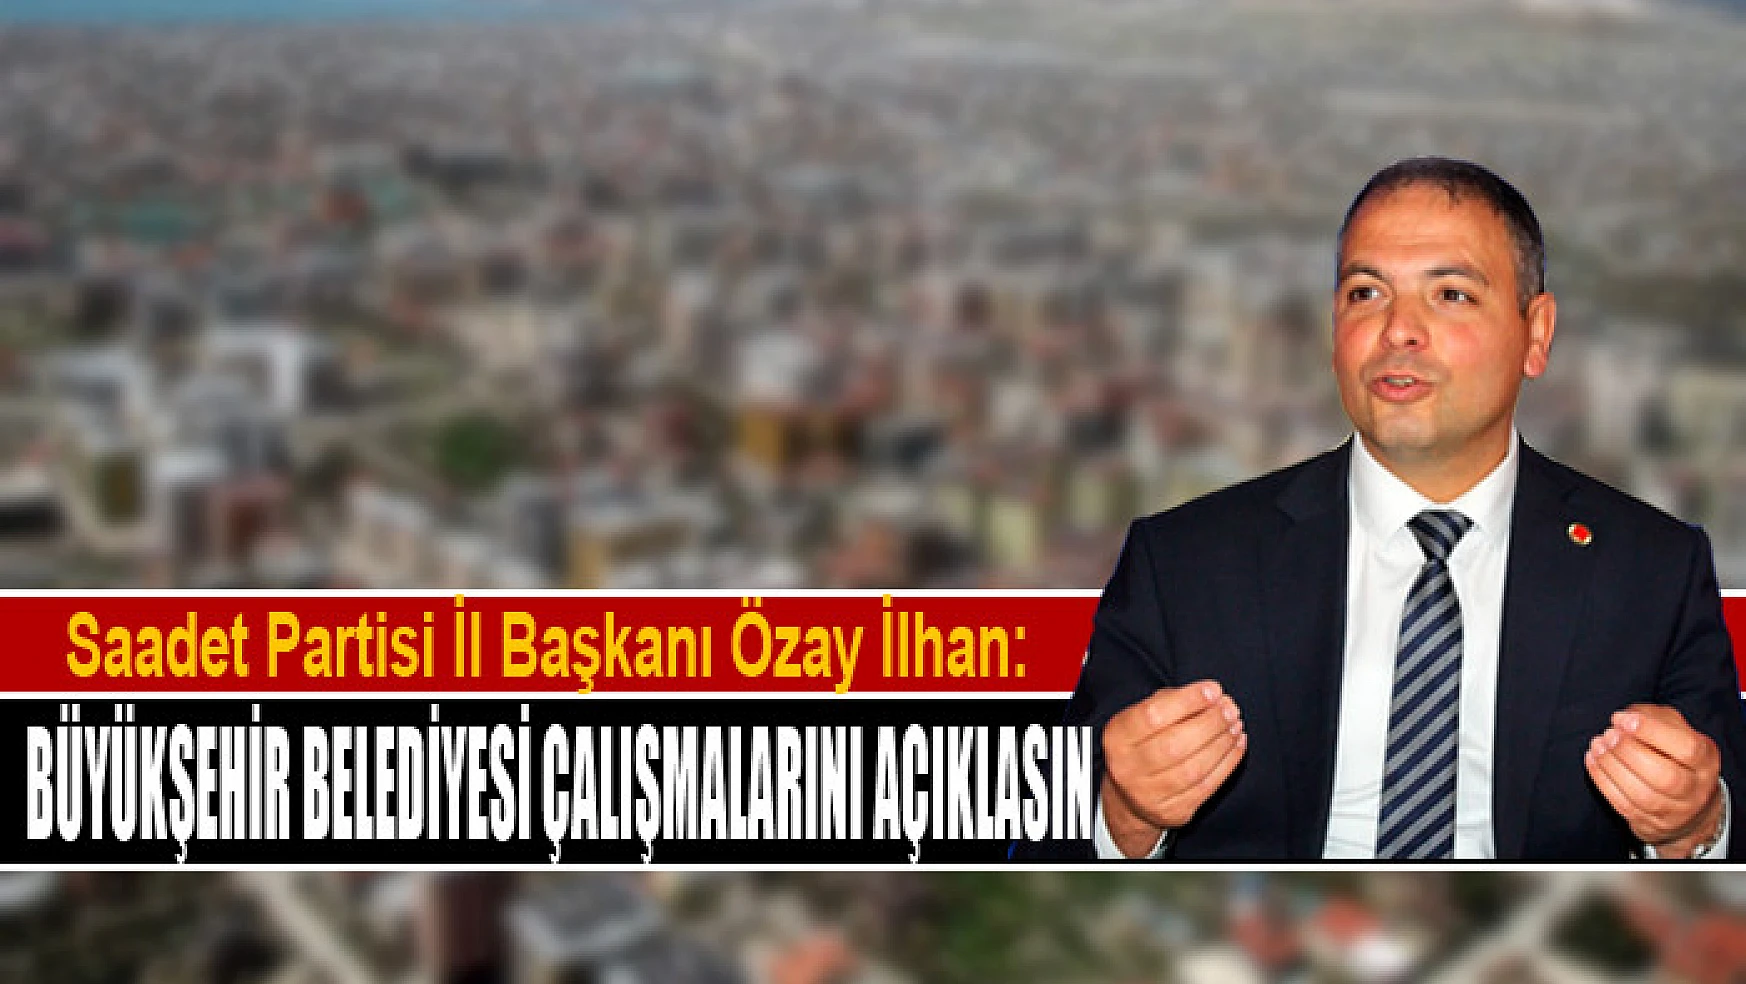 İlhan: Van Büyükşehir Belediyesi çalışmalarını açıklasın